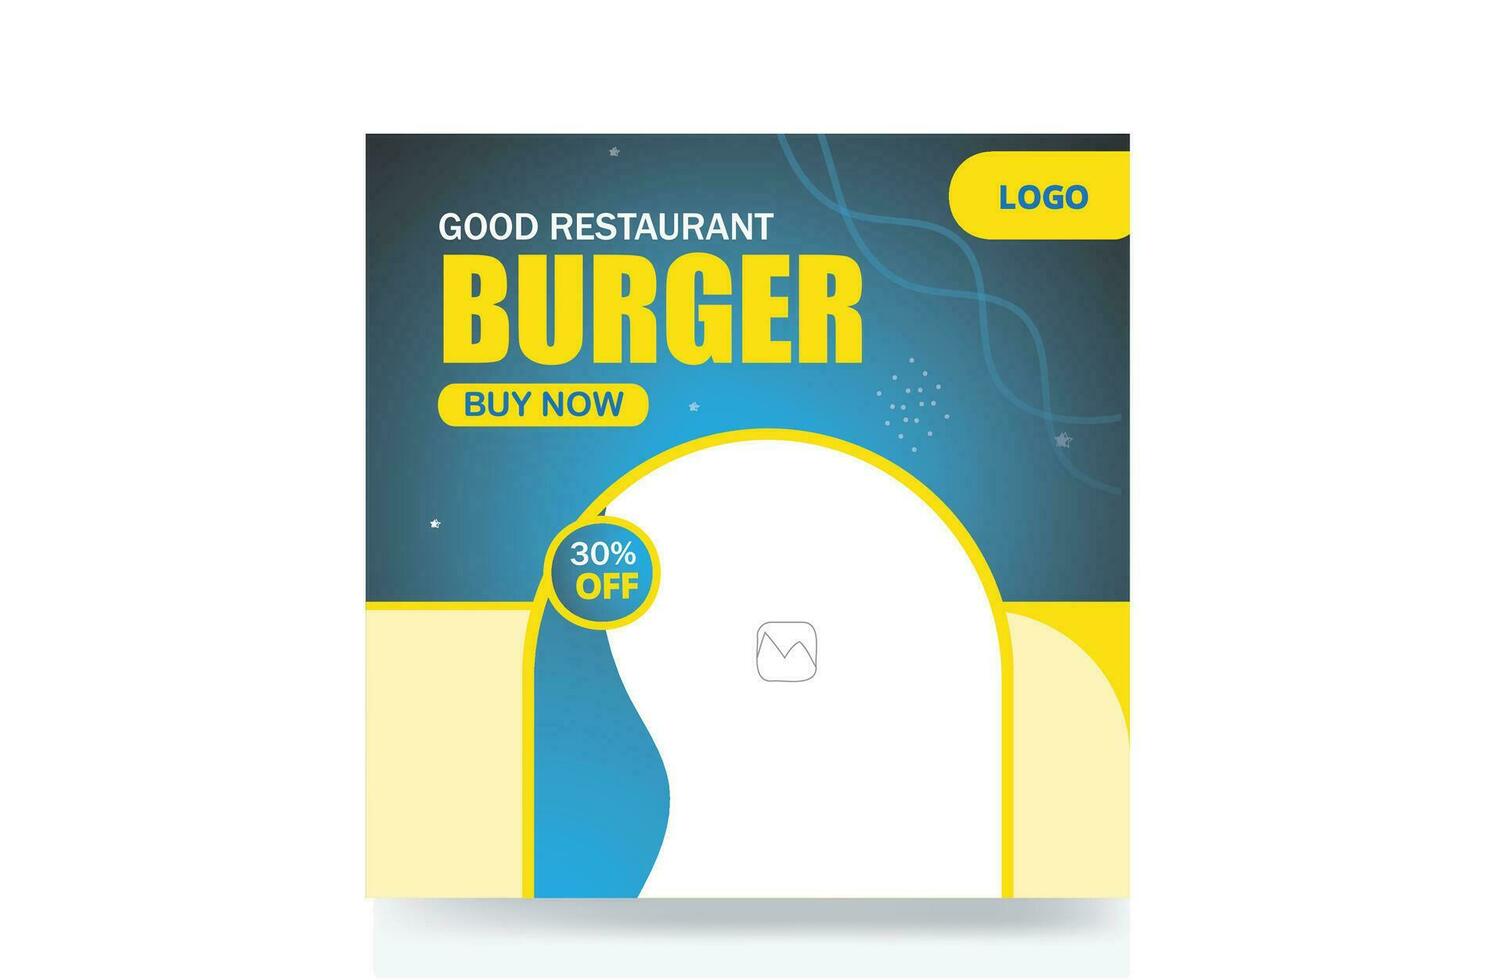 Burger schnell Essen Sozial Medien Post Restaurant Banner Vorlage vektor